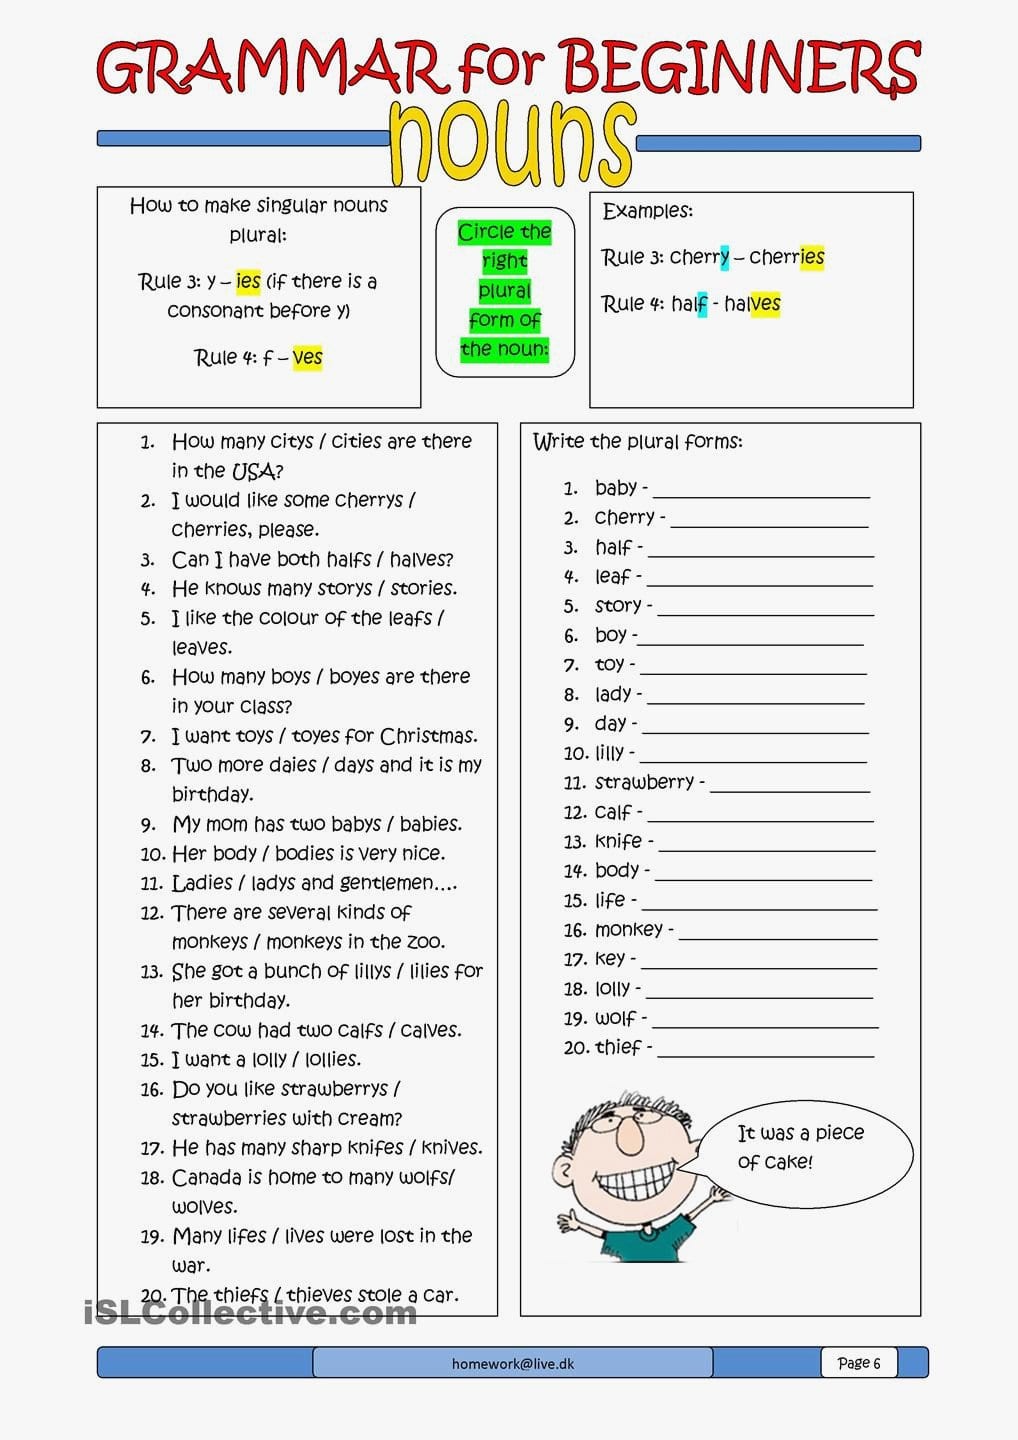 60 Elegant Of English For Beginners Worksheets Image Within Basic English Learning Worksheets